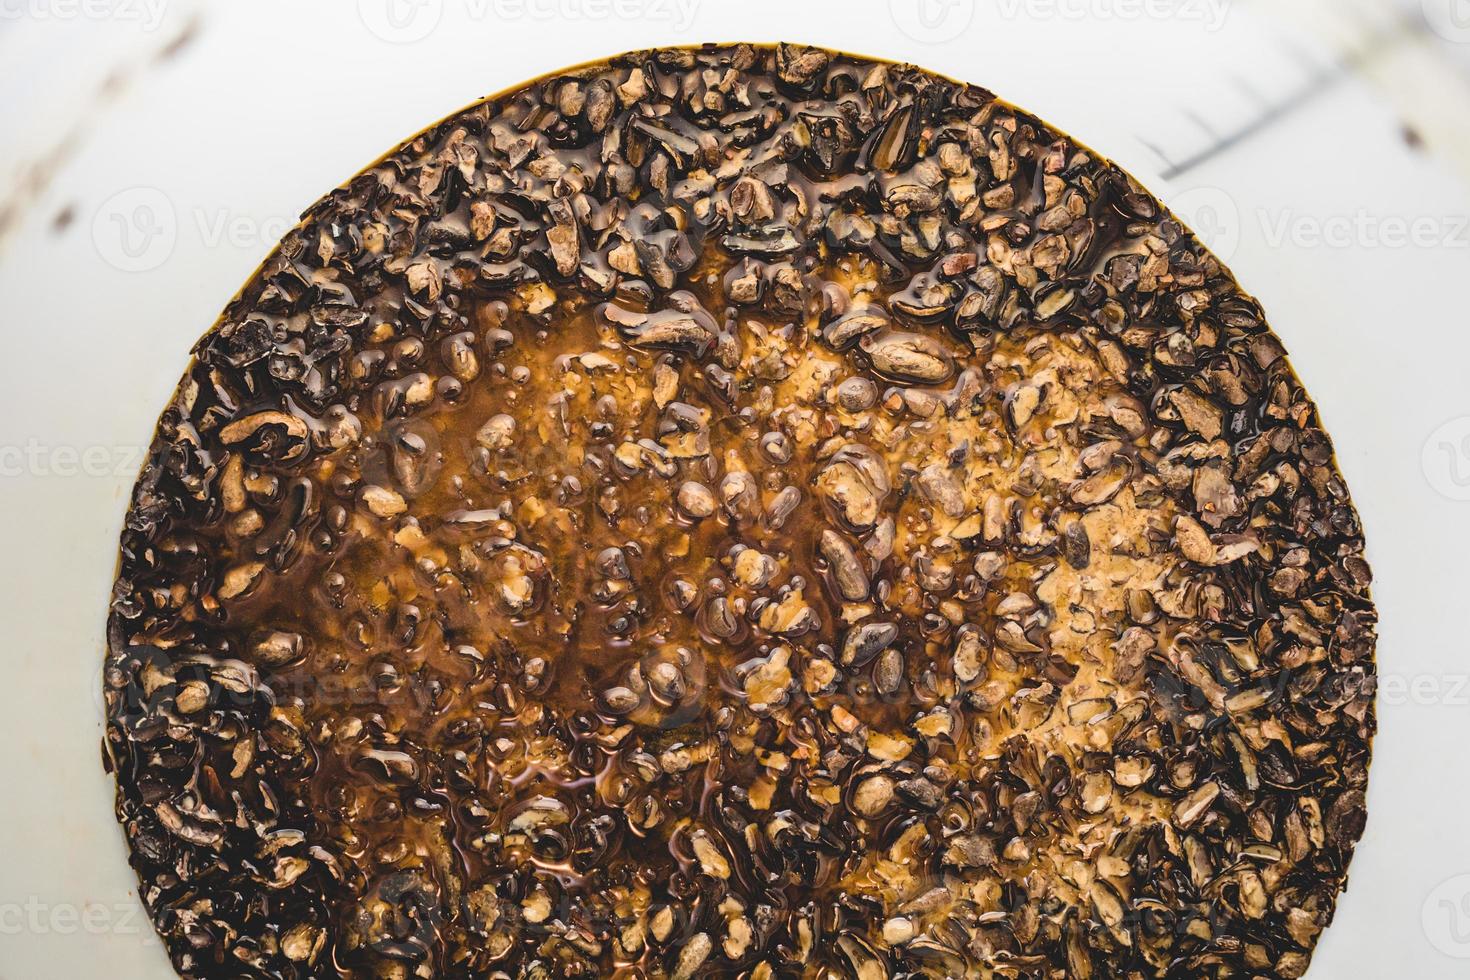 acabados resíduos de cerveja fabricada em casa chamado bolo de fermento no fundo do balde foto